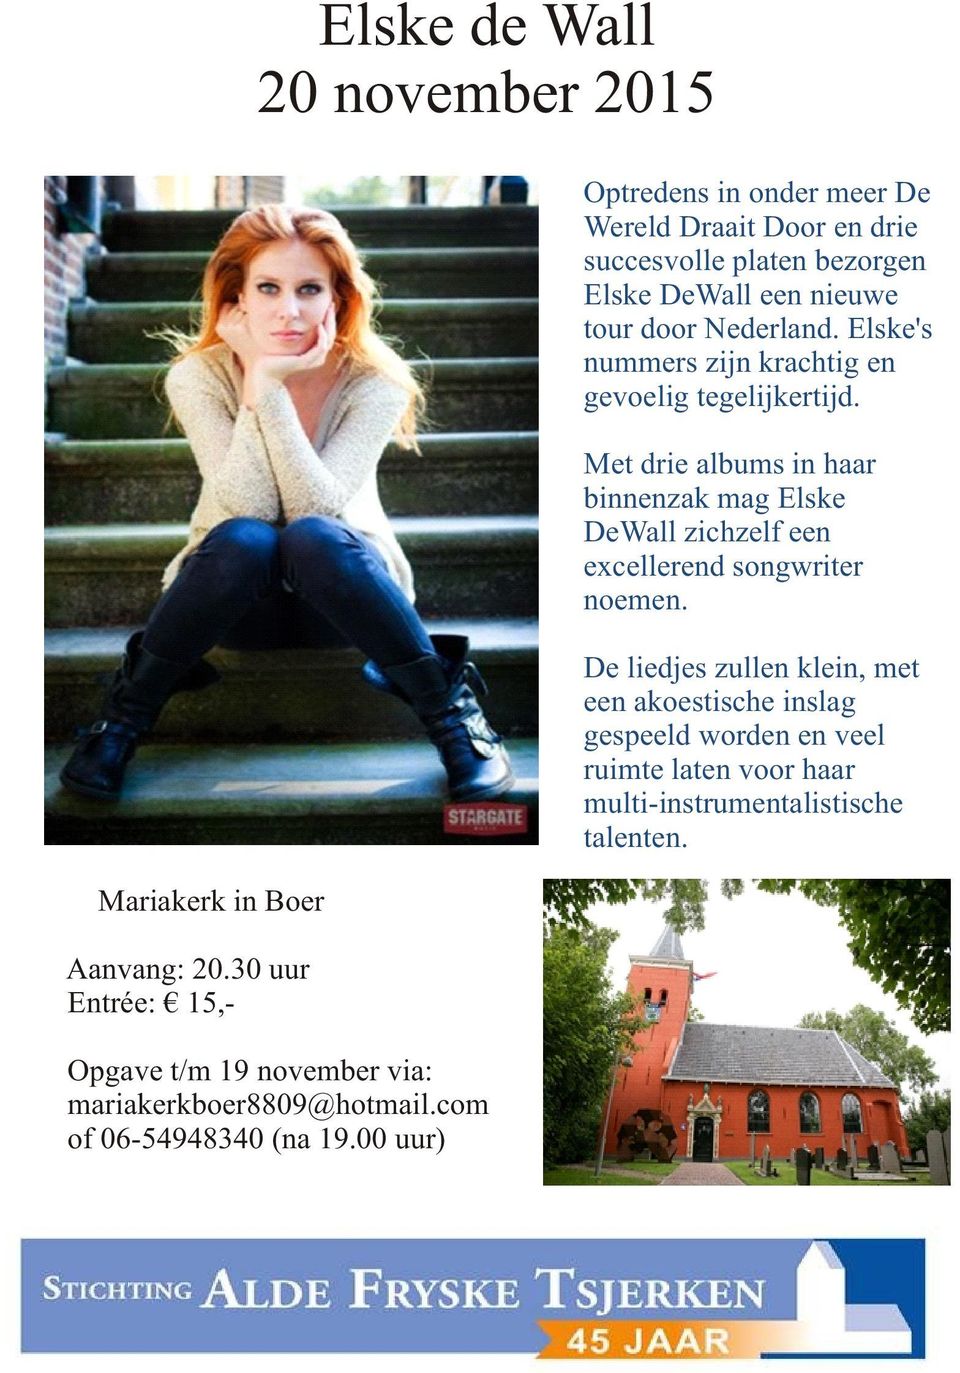 00 uur) Optredens in onder meer De Wereld Draait Door en drie succesvolle platen bezorgen Elske DeWall een nieuwe tour door Nederland.